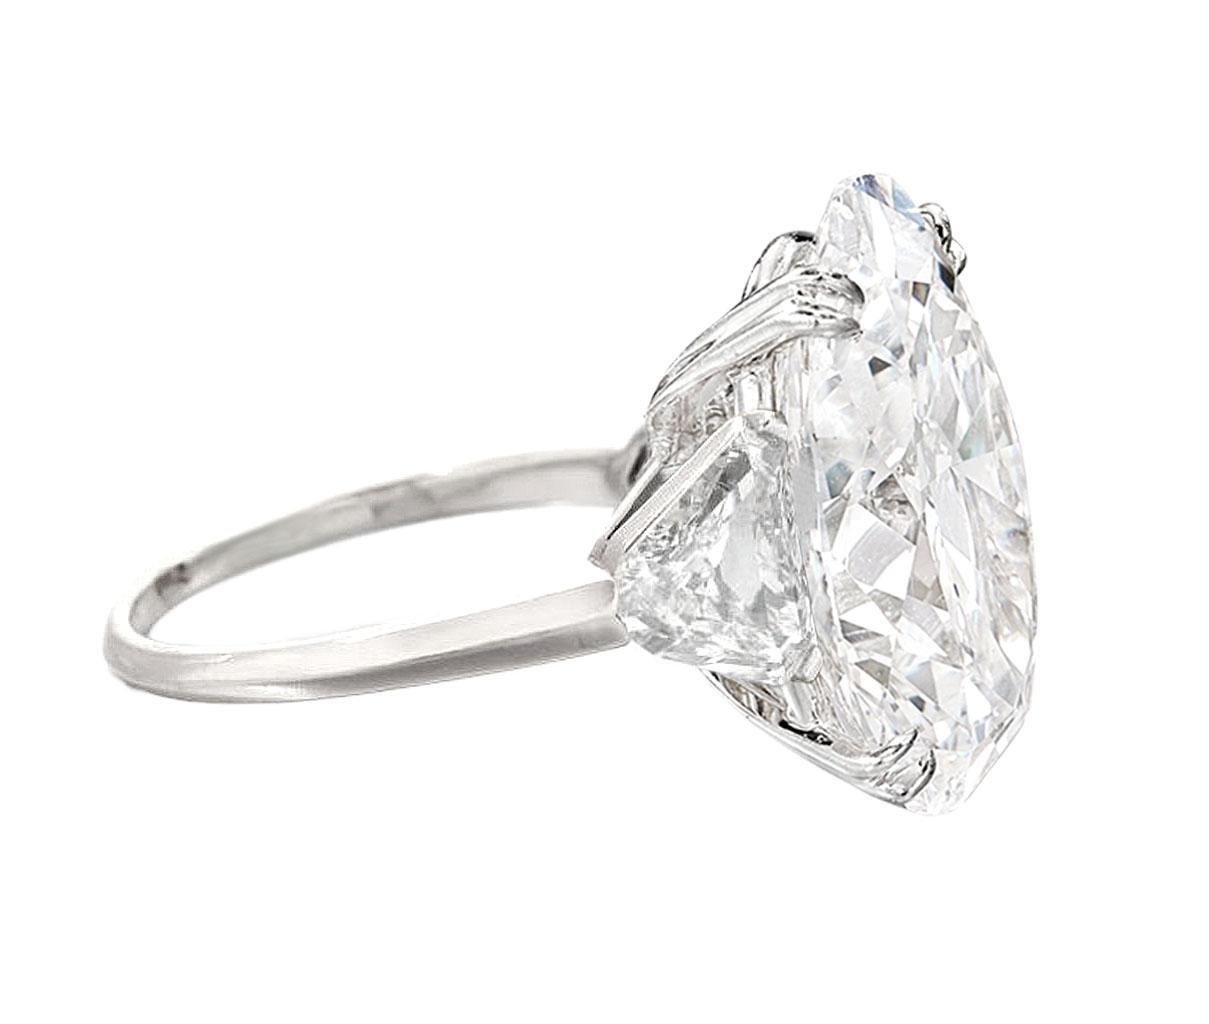 Découvrez l'incarnation du luxe avec notre exquise bague ovale en diamant, méticuleusement certifiée par le GIA pour l'authenticité et l'assurance de la qualité. Ce chef-d'œuvre est orné d'un diamant époustouflant de 4 carats, d'une couleur D et